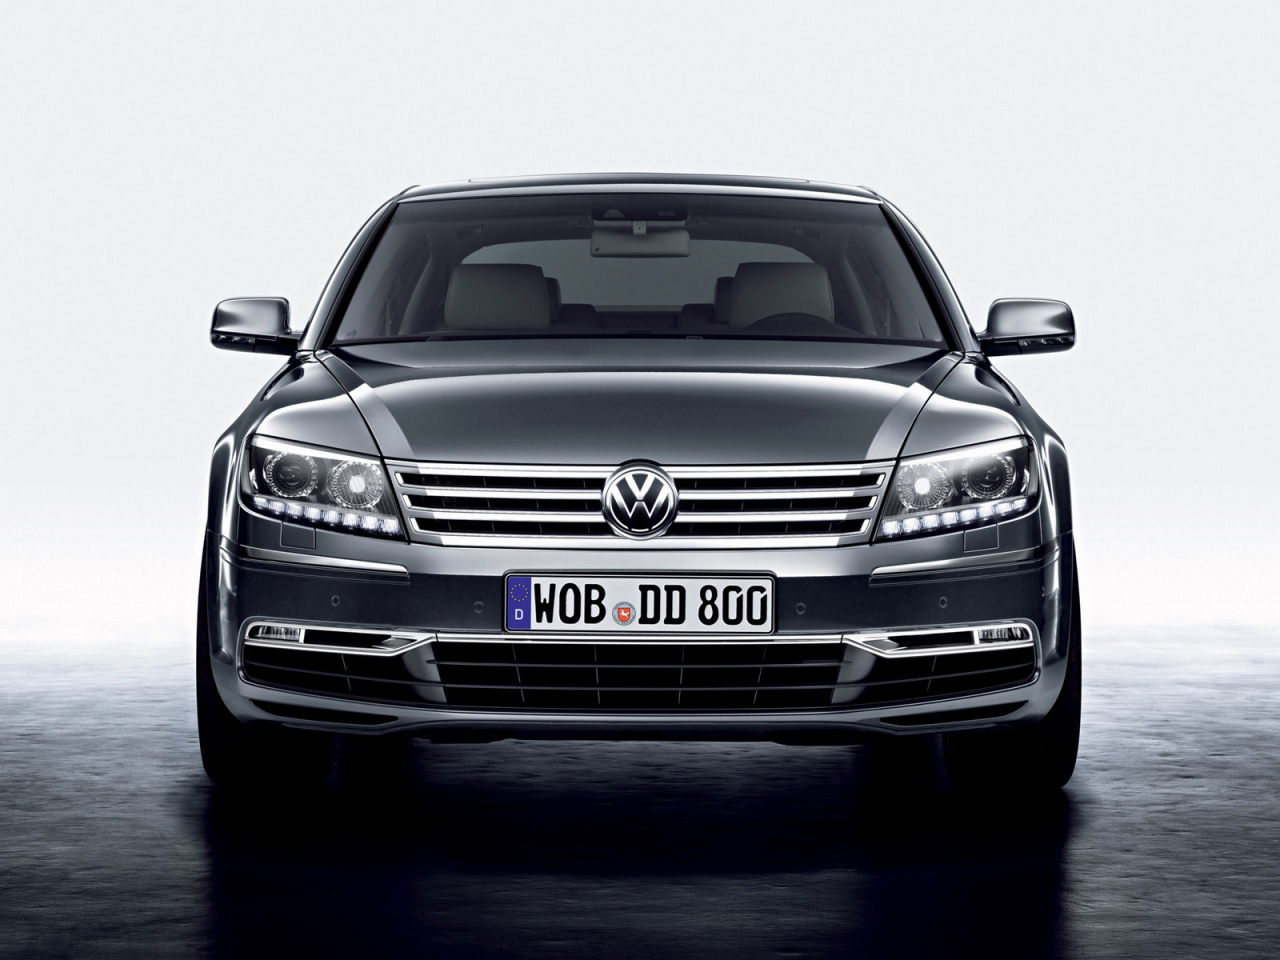 Volkswagen Phaeton Front for 1280 x 960 resolution